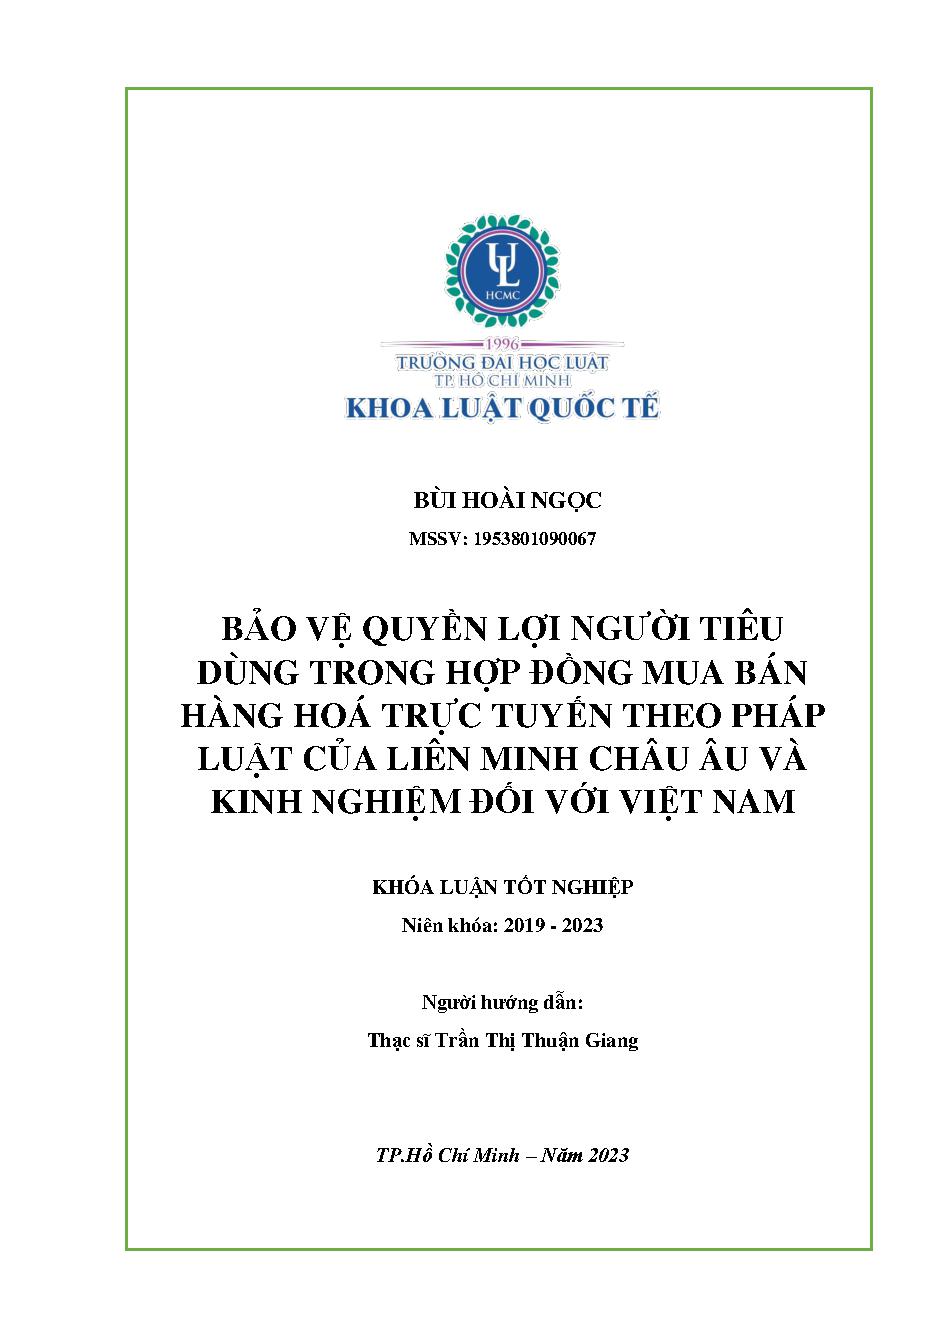 Bảo vệ quyền lợi người tiêu dùng trong hợp đồng mua bán hàng hóa trực tuyến theo pháp luật của liên minh Châu Âu và kinh nghiệm đối với Việt Nam